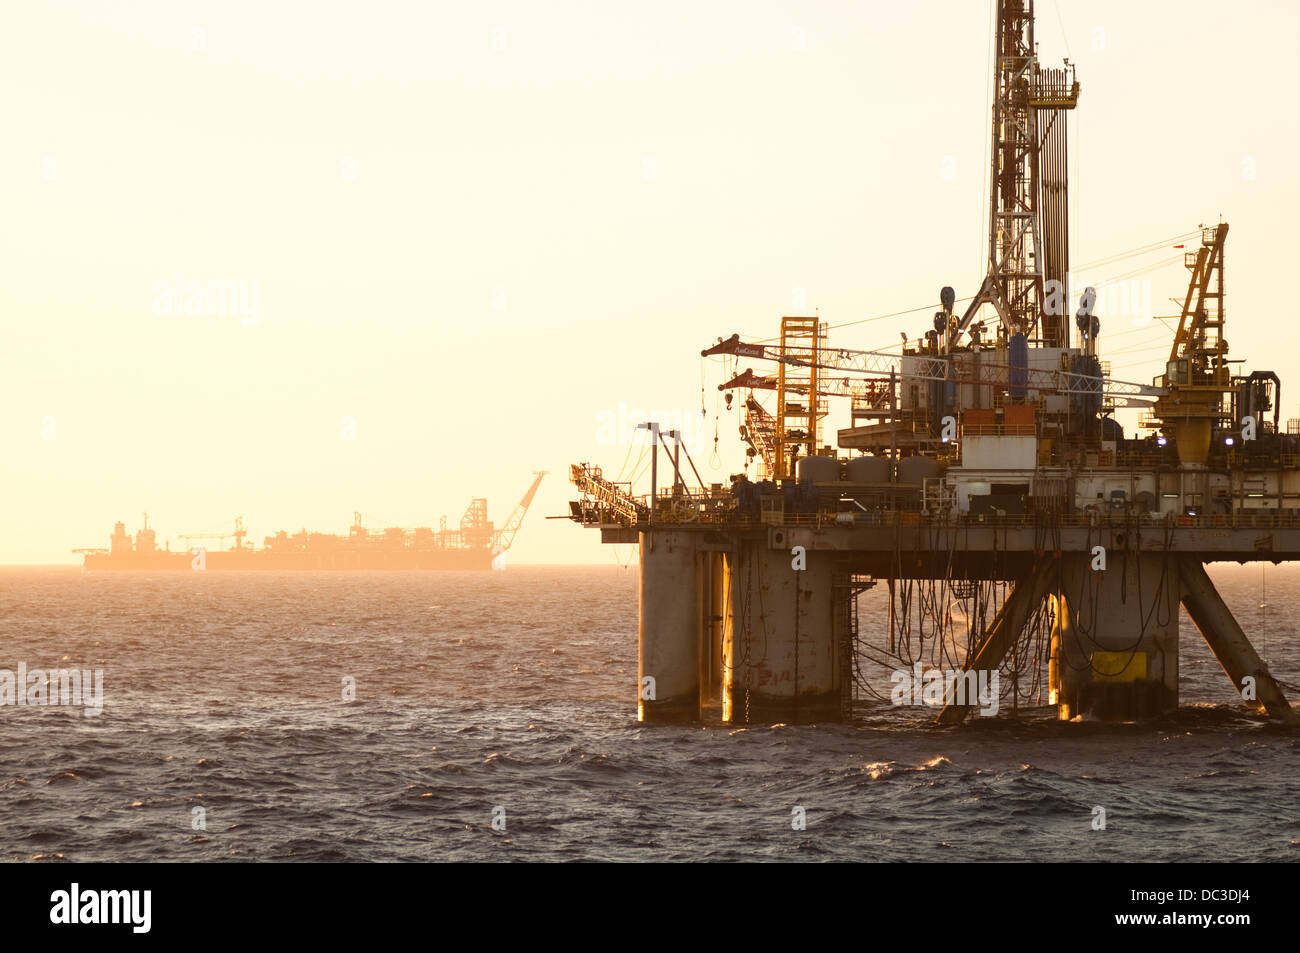 oil drilling rigs offshore oil field Rio de Janeiro Campos Basin, Brazil Stock Photo